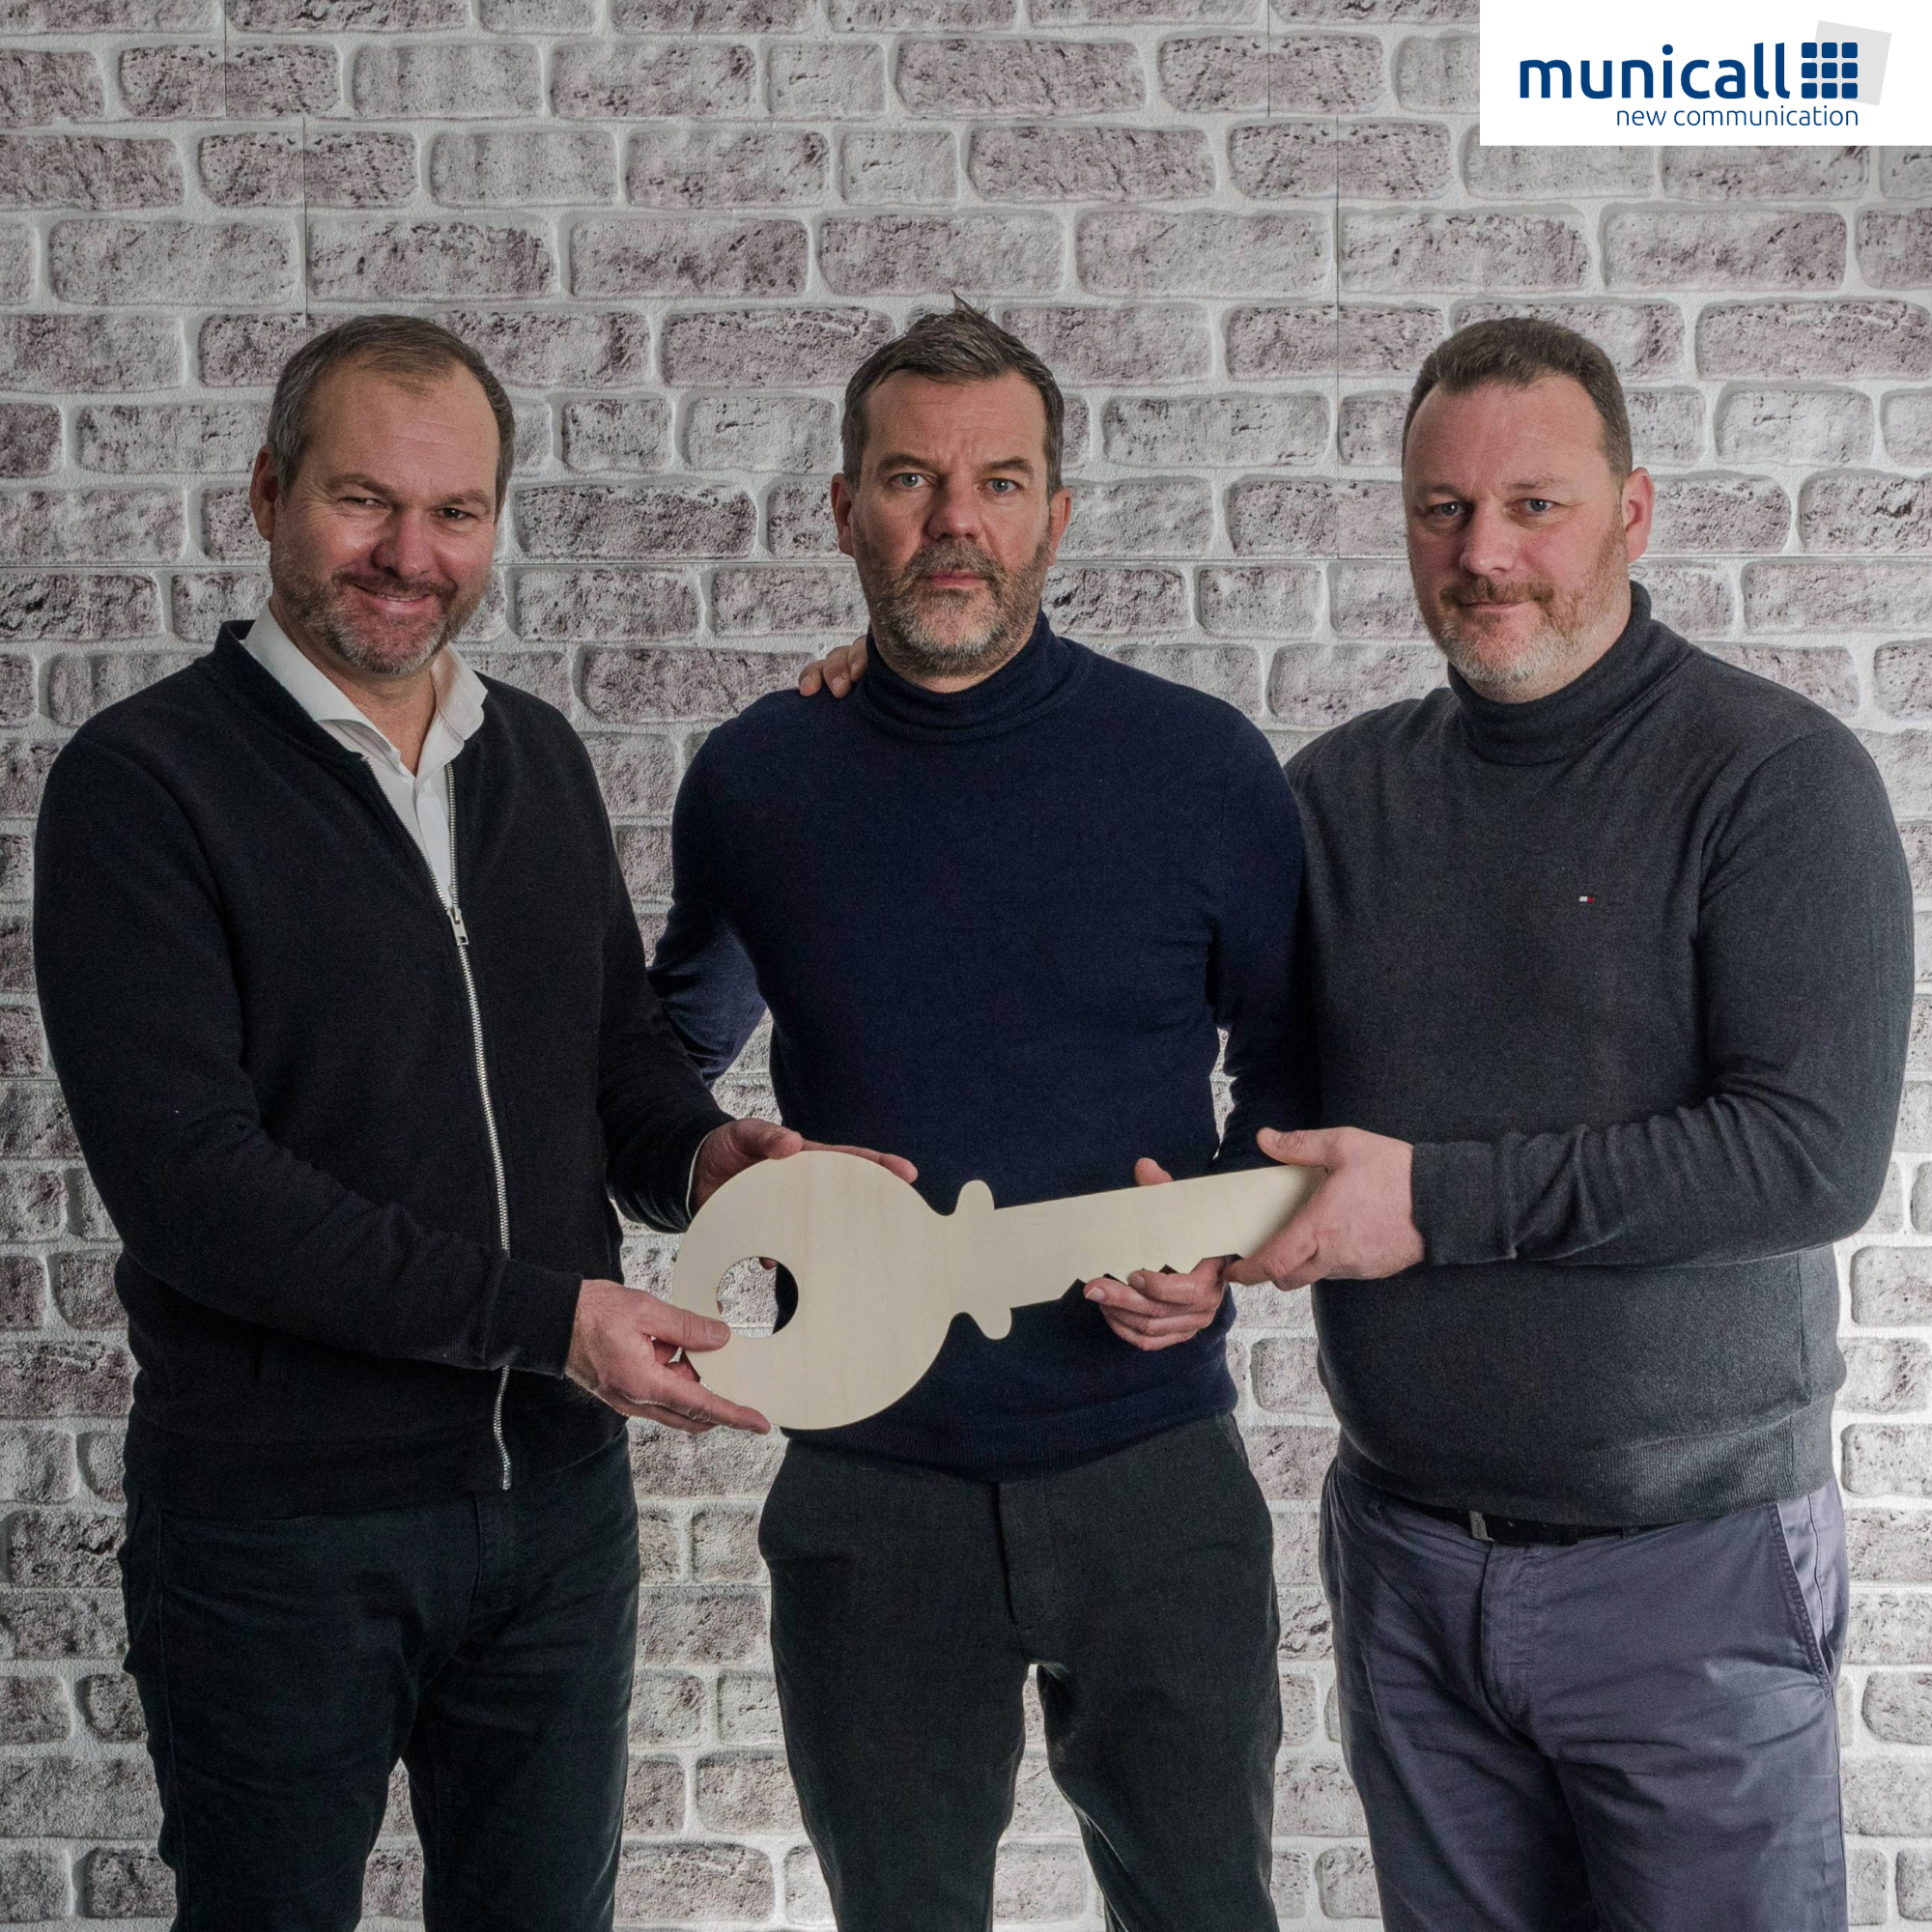 Wechsel in der Geschäftsleitung der Municall GmbH - Featured Image